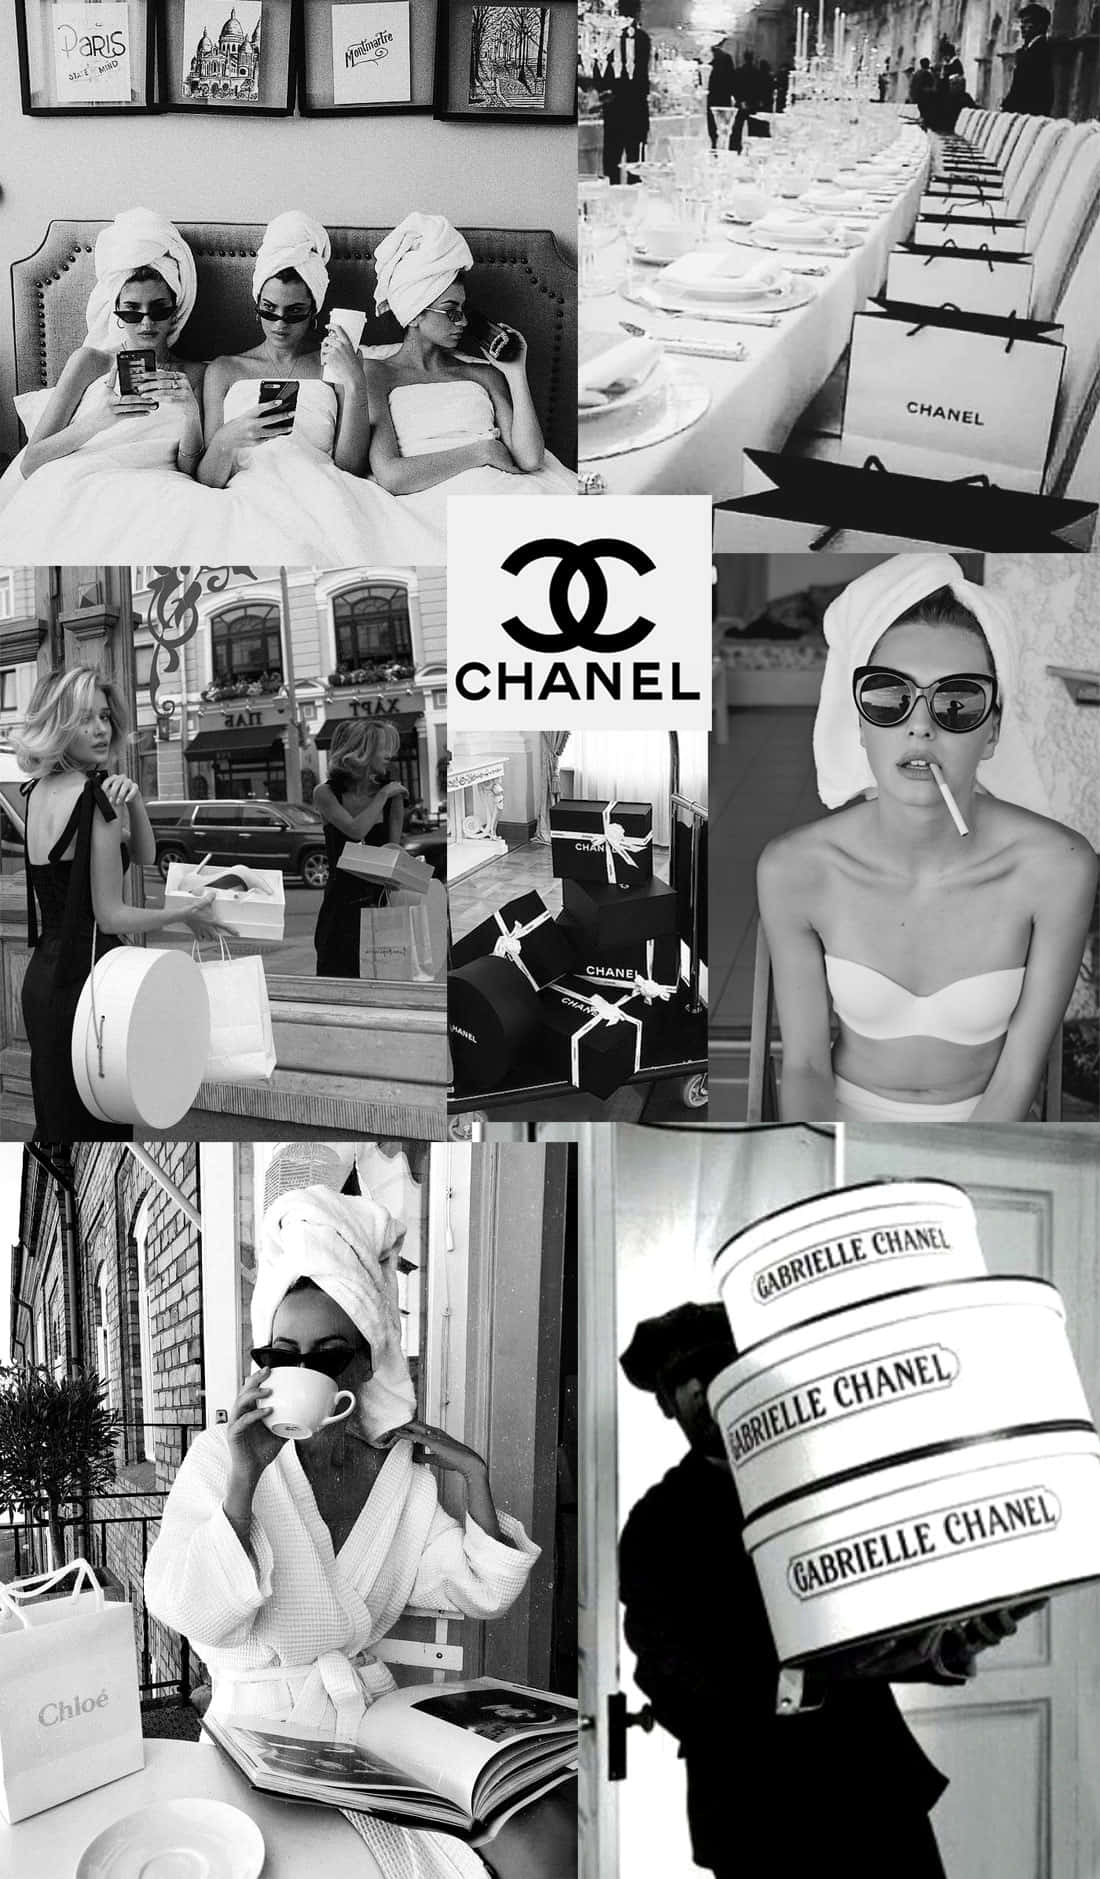 Chanelchanel - Chanel - Chanel - Chanel - Chanel - Chan Wallpaper